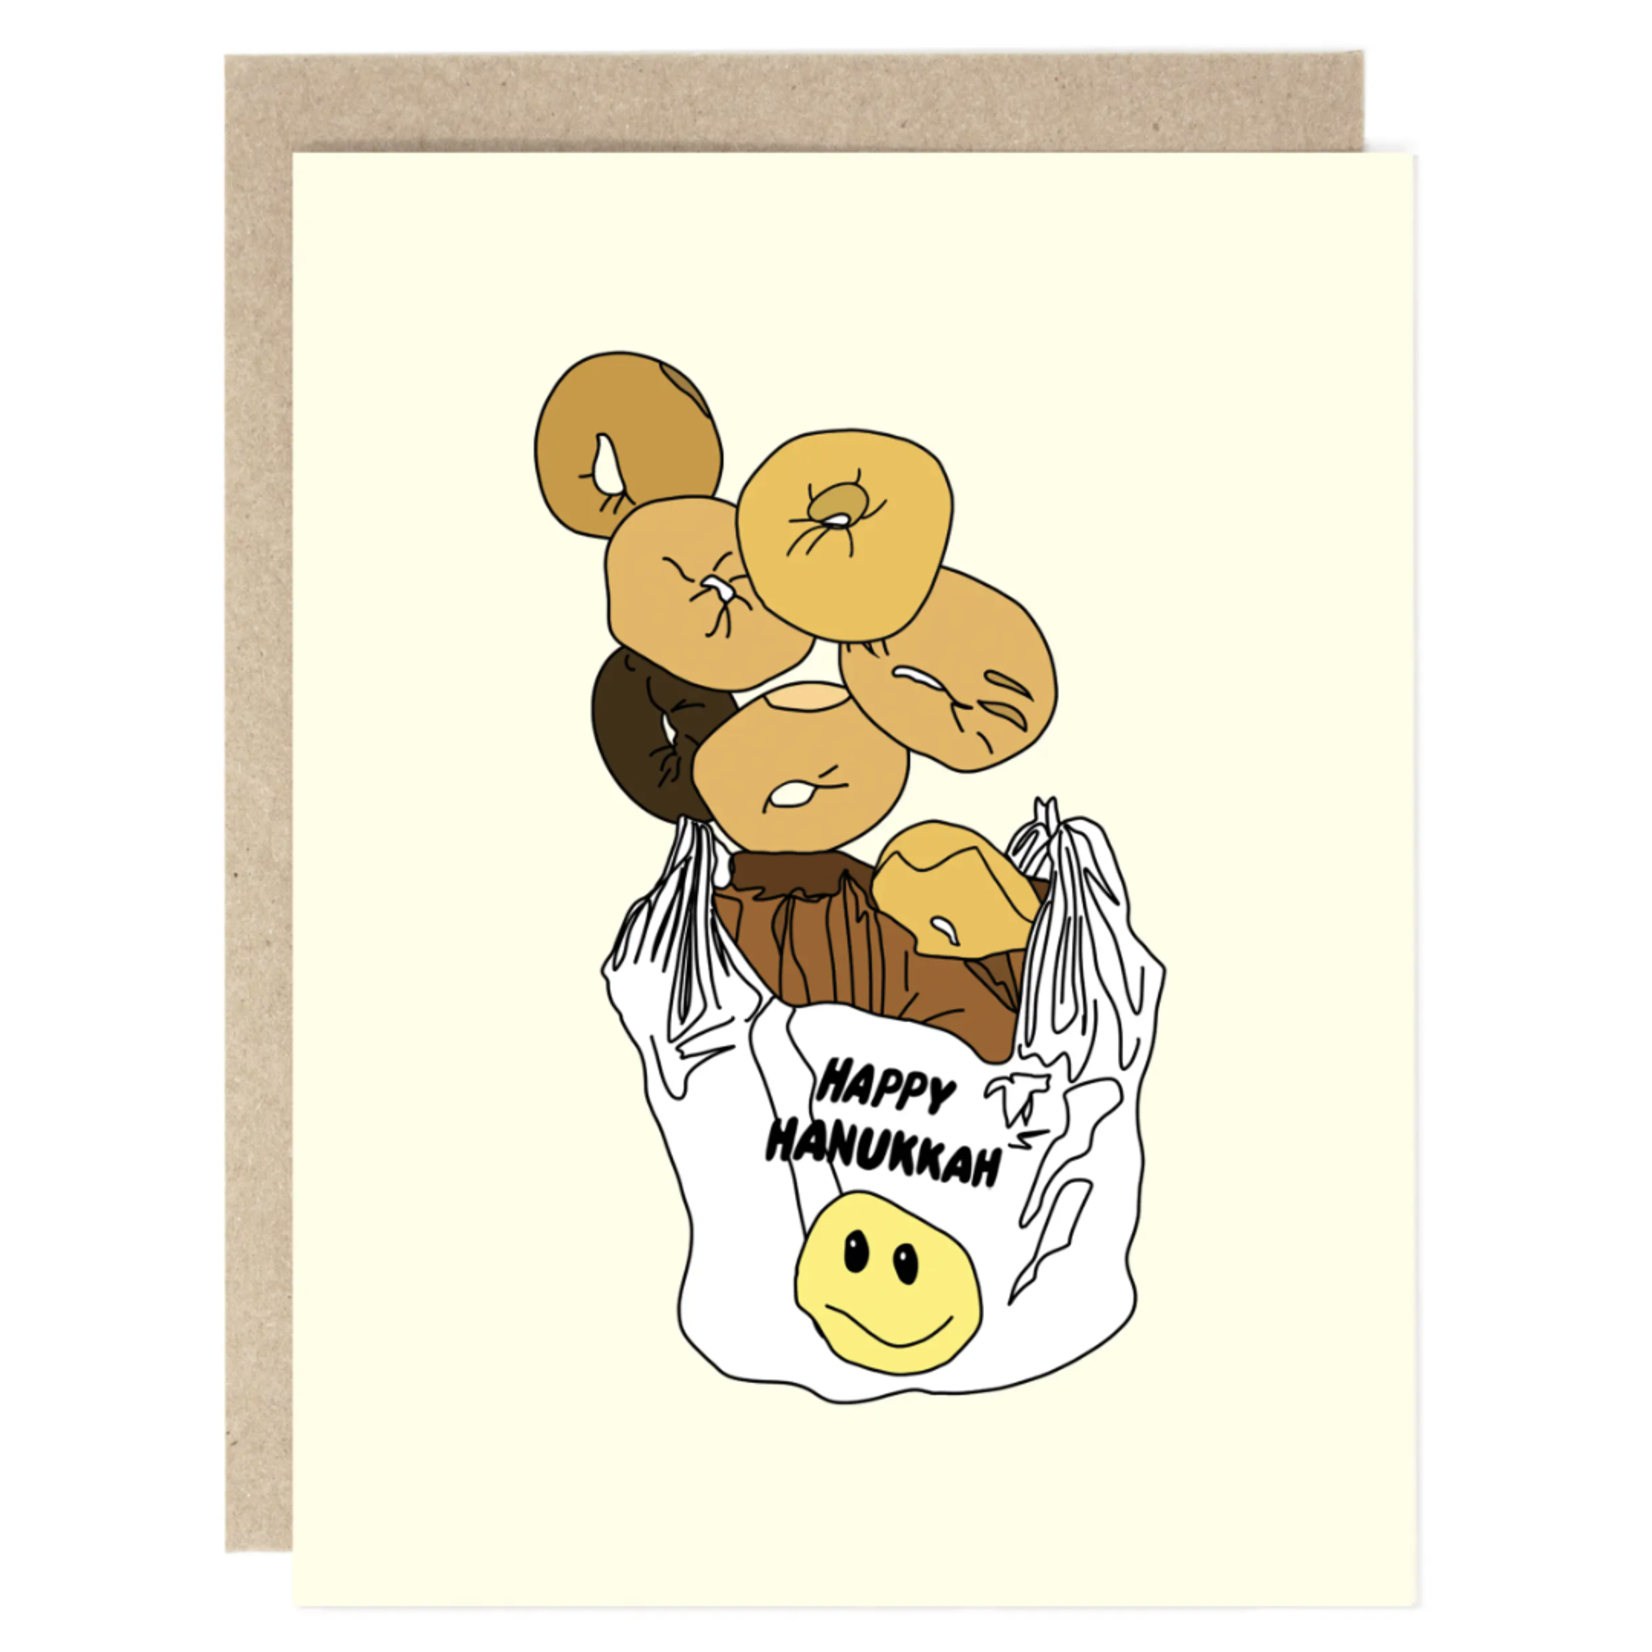 Drawn Goods Bagels for Hanukkah Card